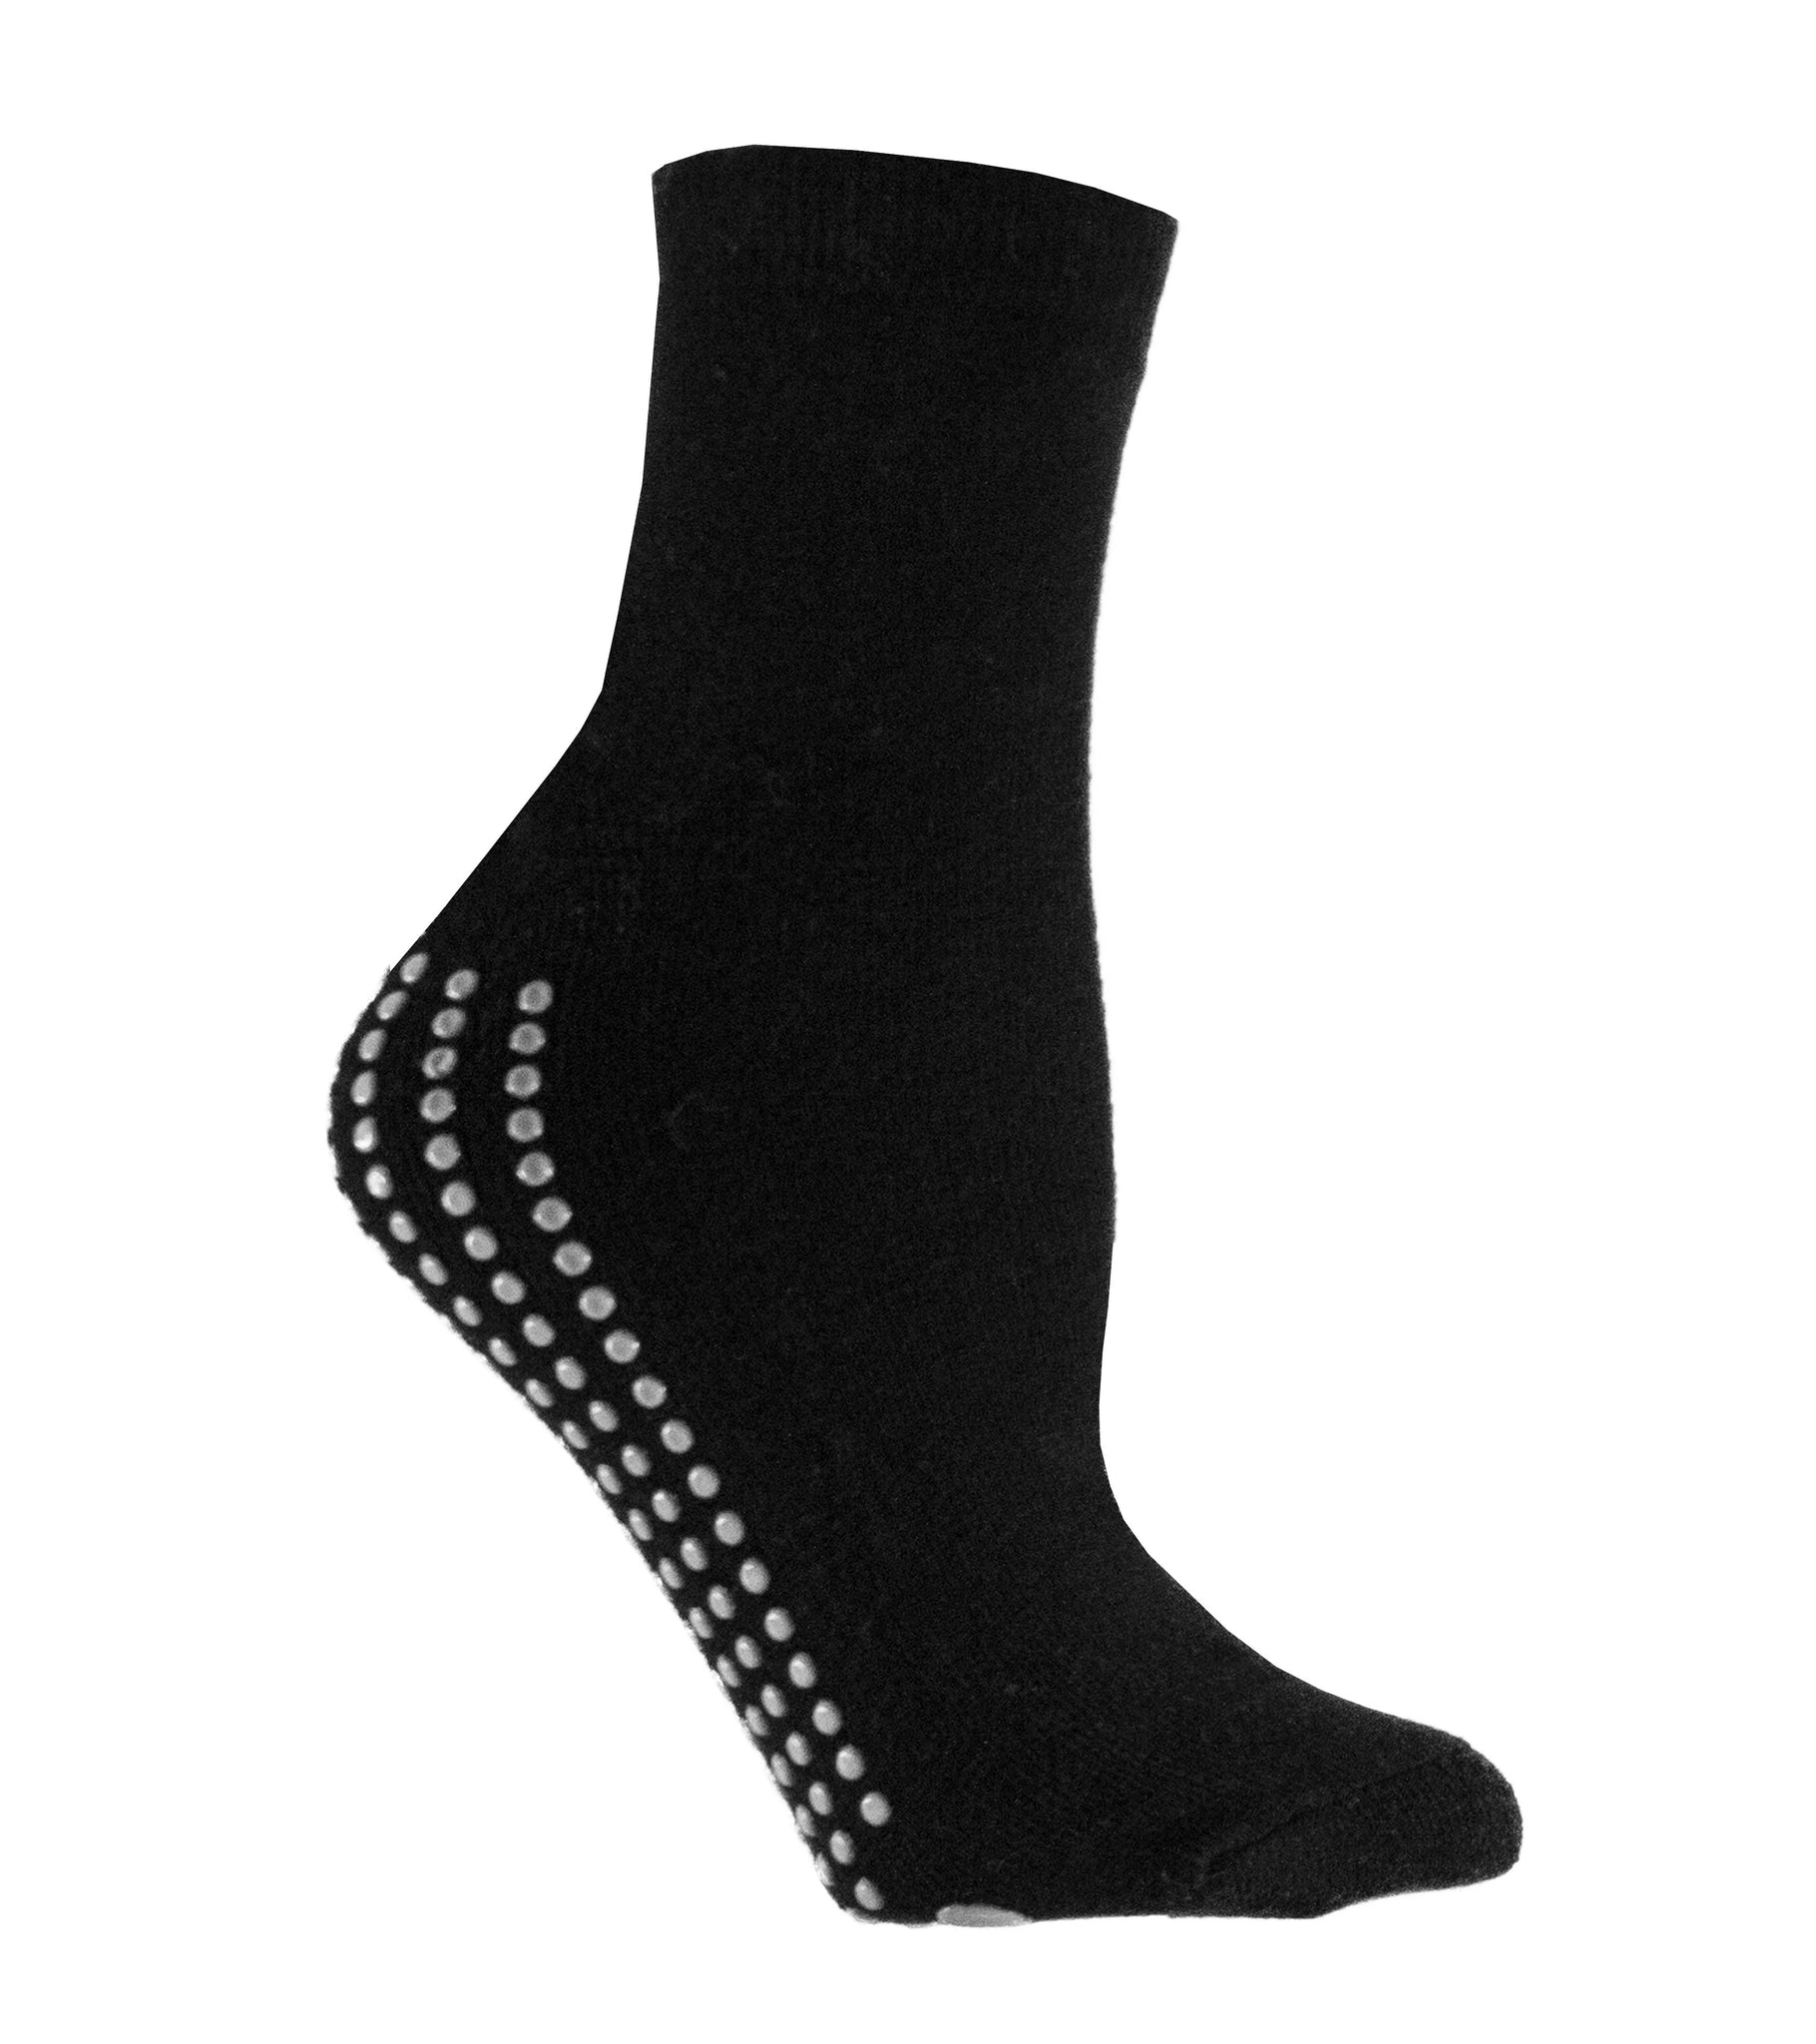 Buy WISVOOO Slipper Socks for Women Anti-Slip 5 pairs Super Soft